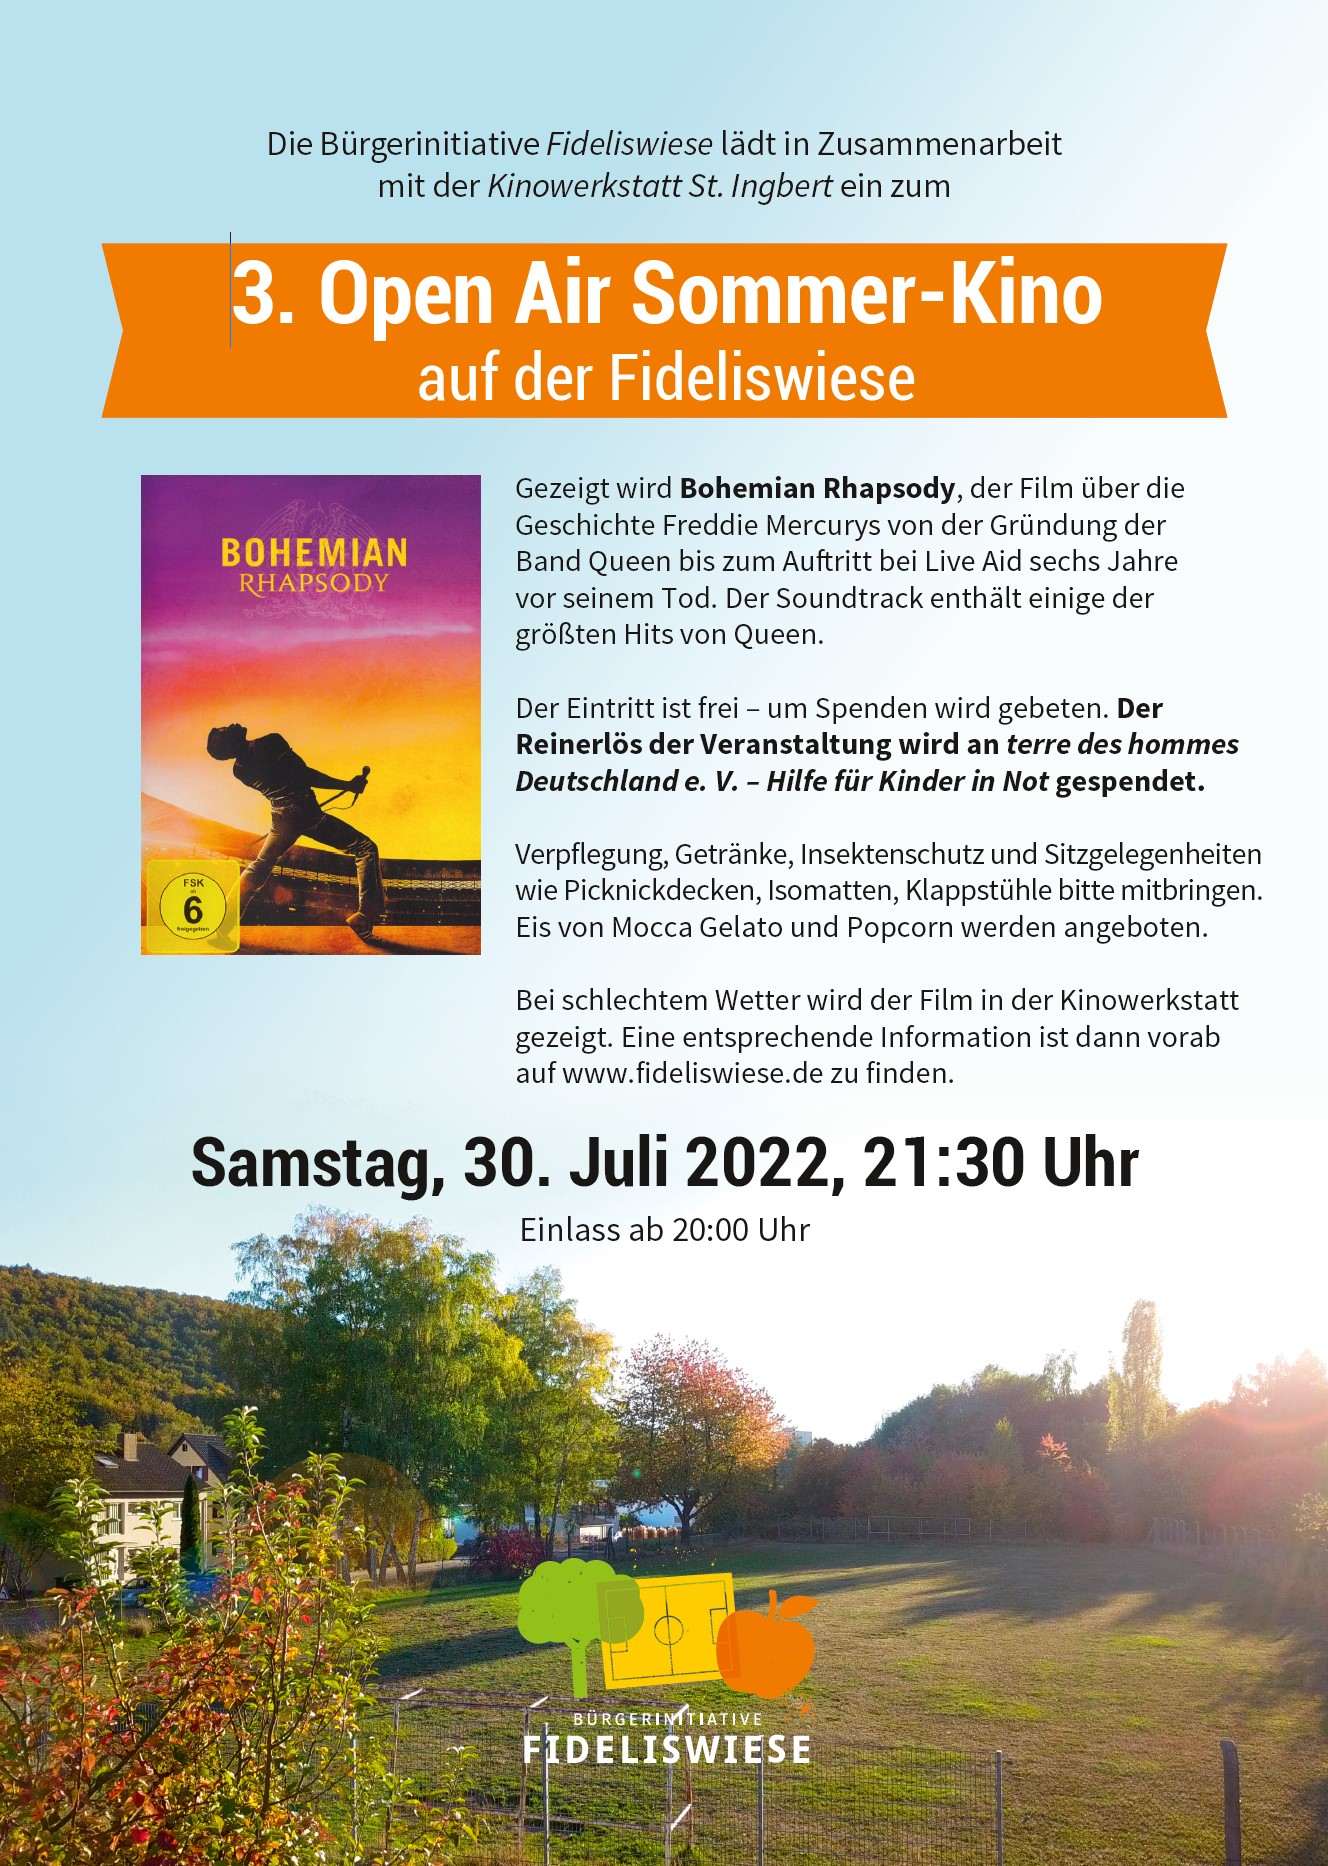 Open Air Sommer-Kino auf der Fideliswiese